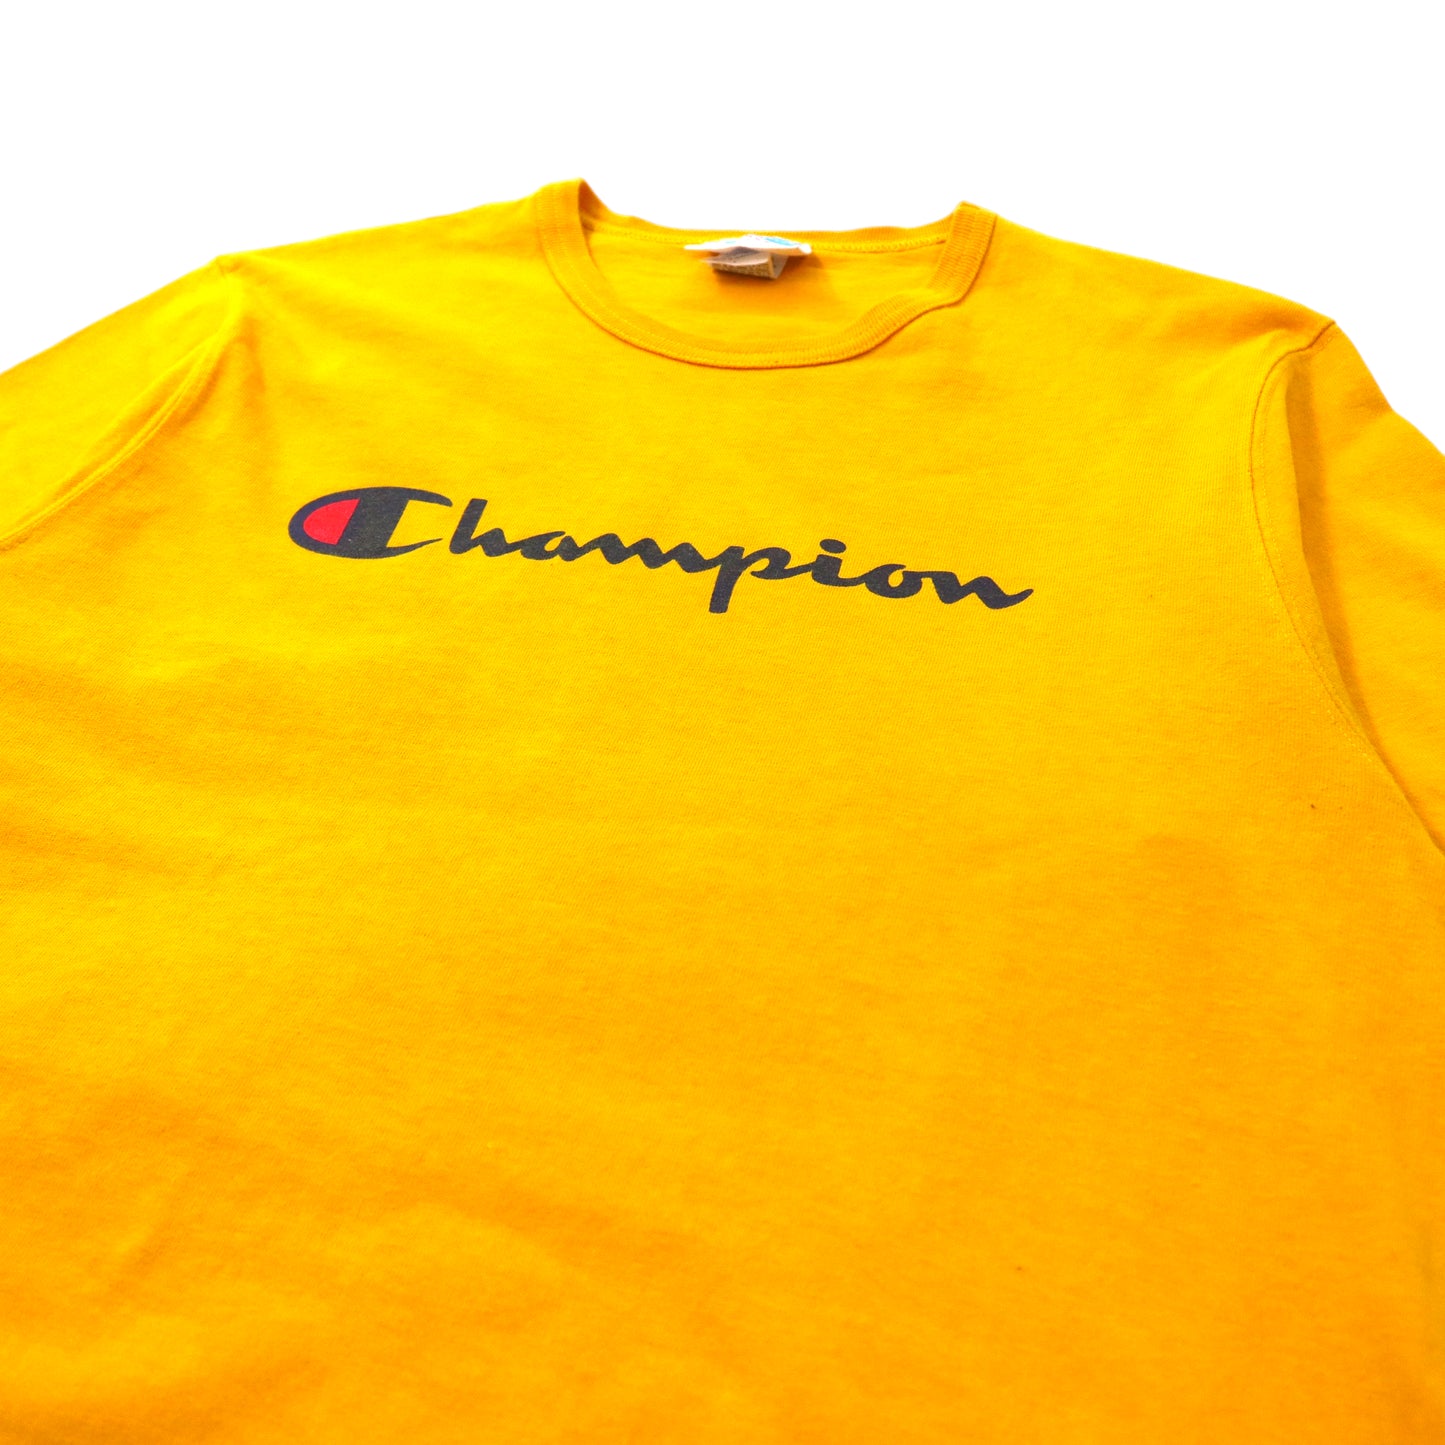 Champion 90年代 Tシャツ XL イエロー バータグ復刻 コットン  スクリプトロゴ プリント ビッグサイズ